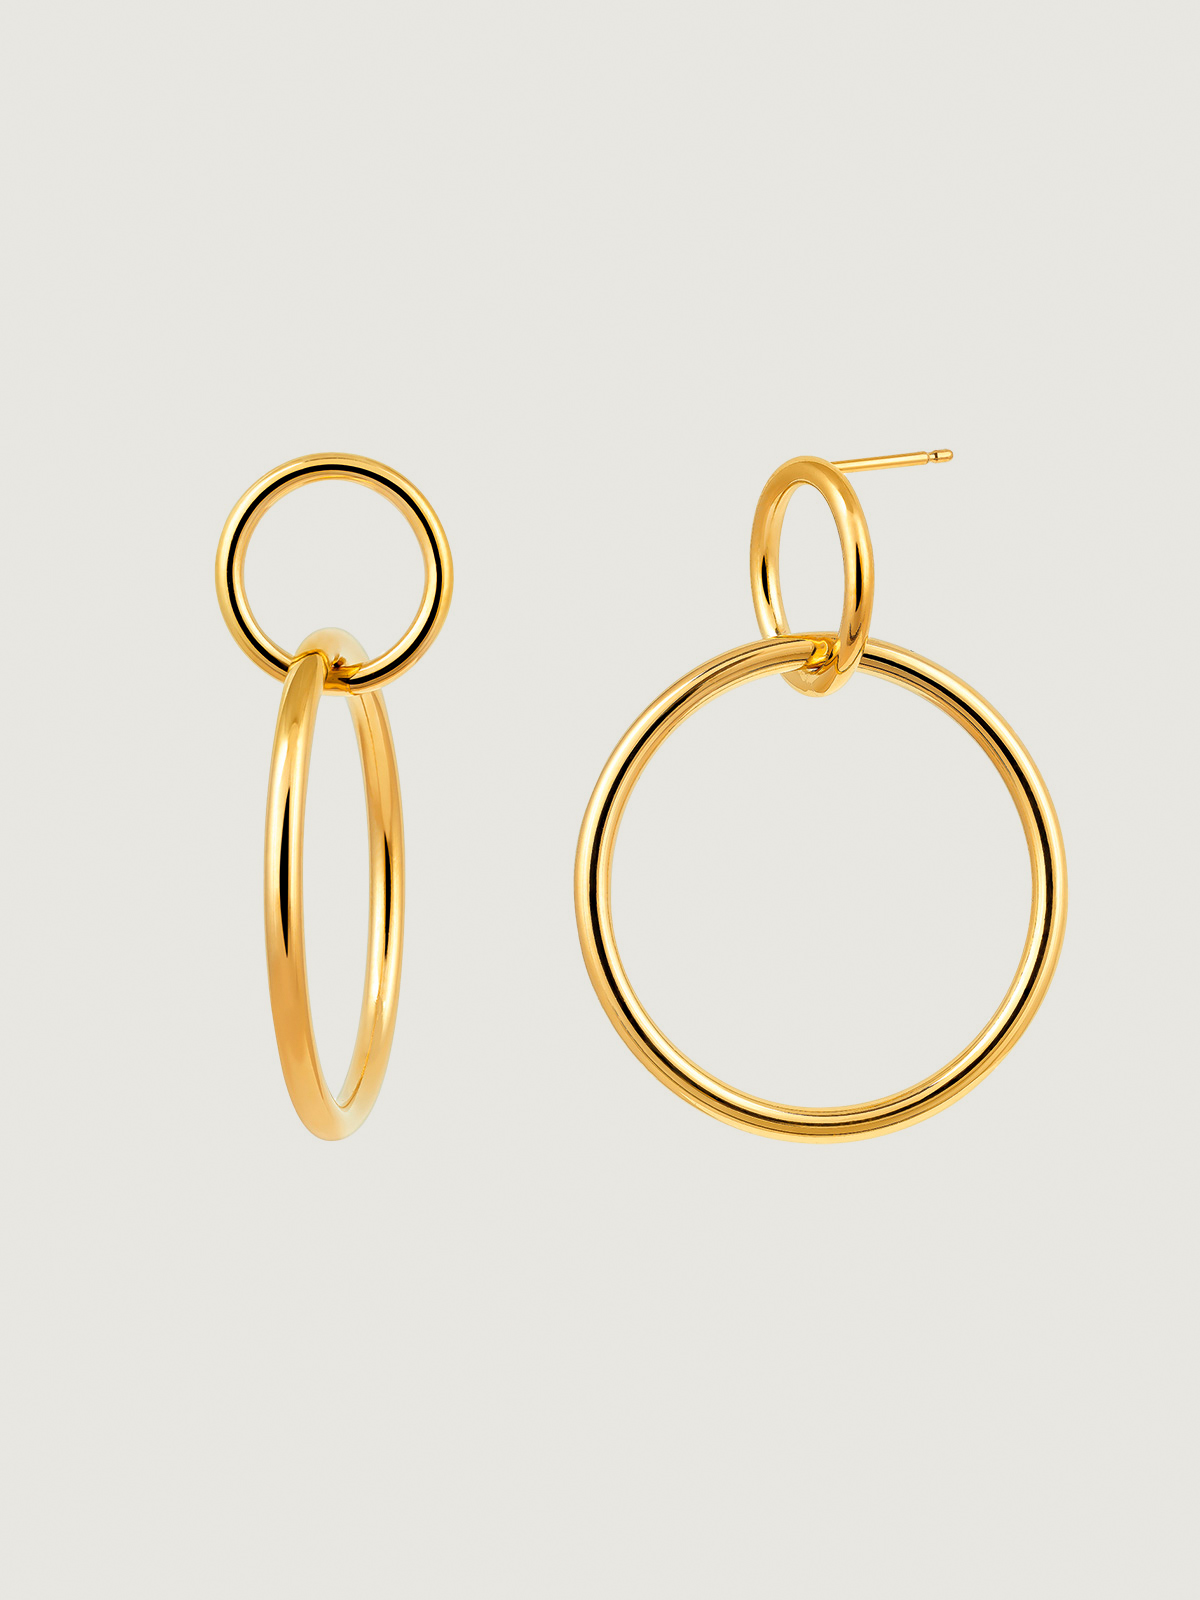 Double hoop earrings in 925 silver coated in 18K yellow gold.